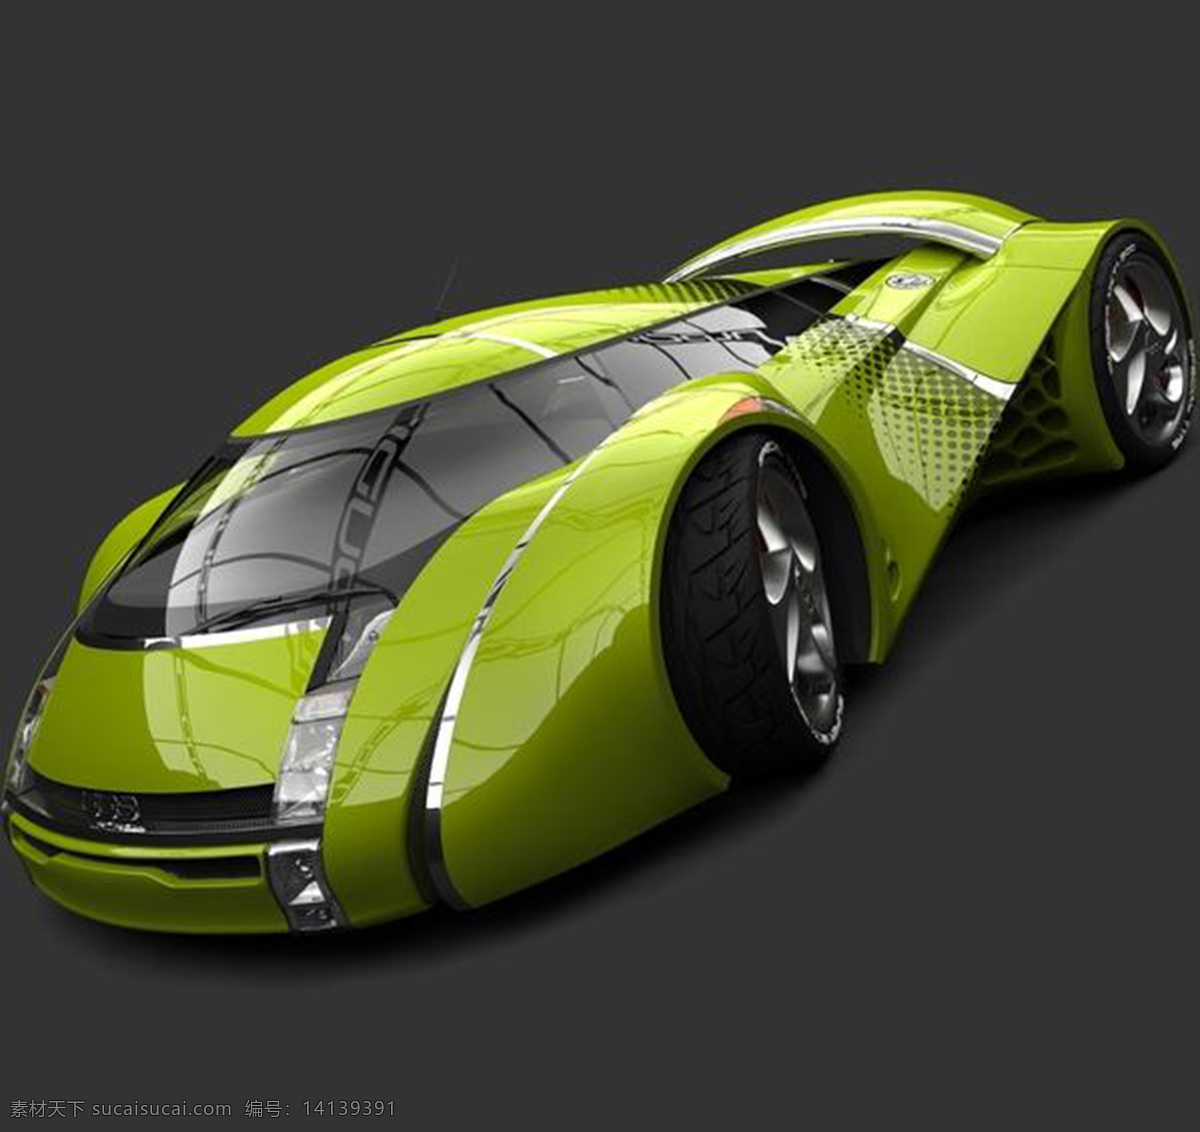 概念车 方案 详细 稿 产品设计 大气 工业设计 交通 酷炫 汽车